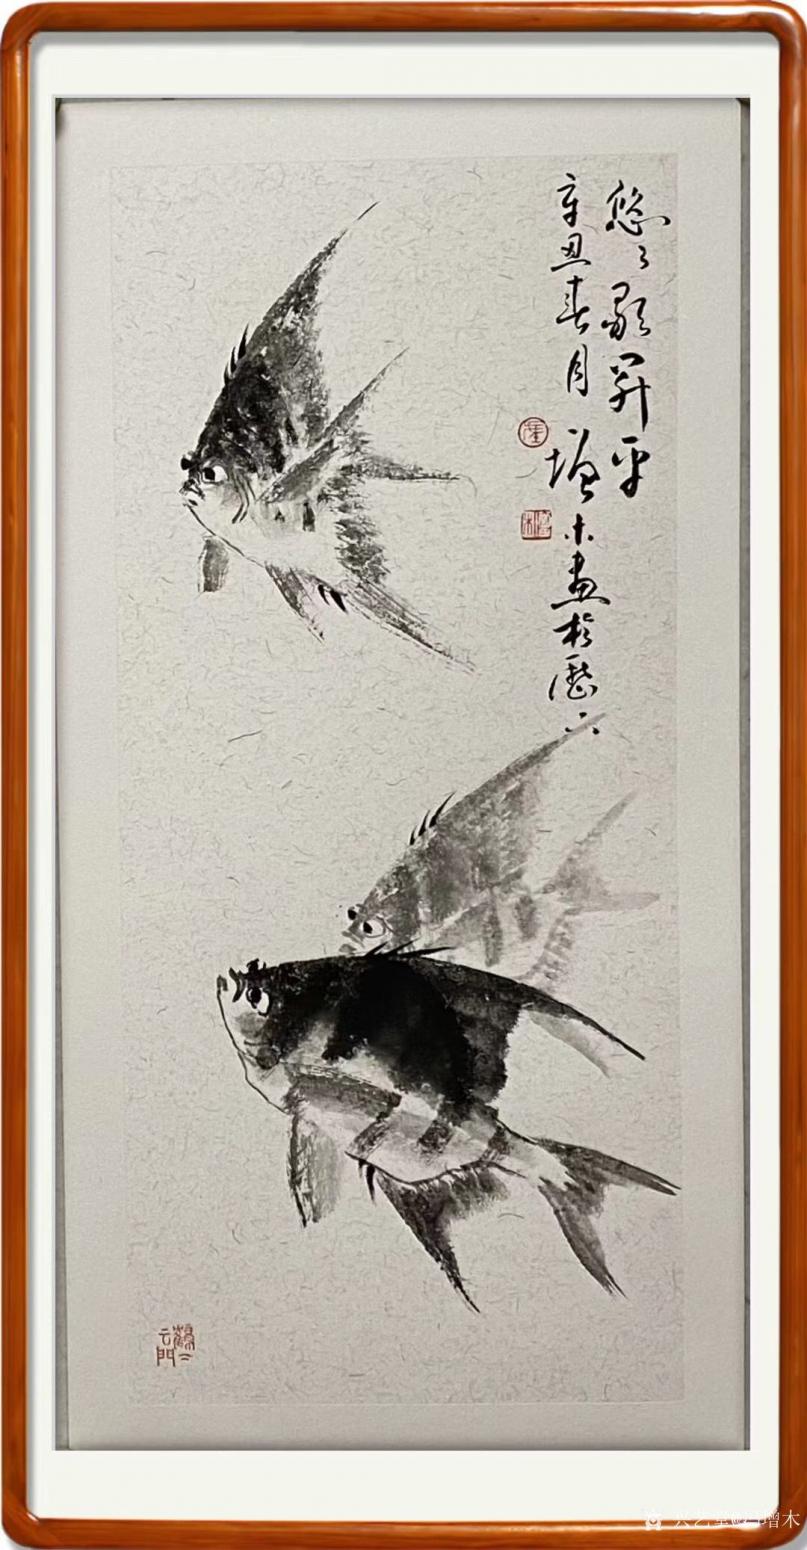 冯增木国画作品《鱼-悠悠升平》